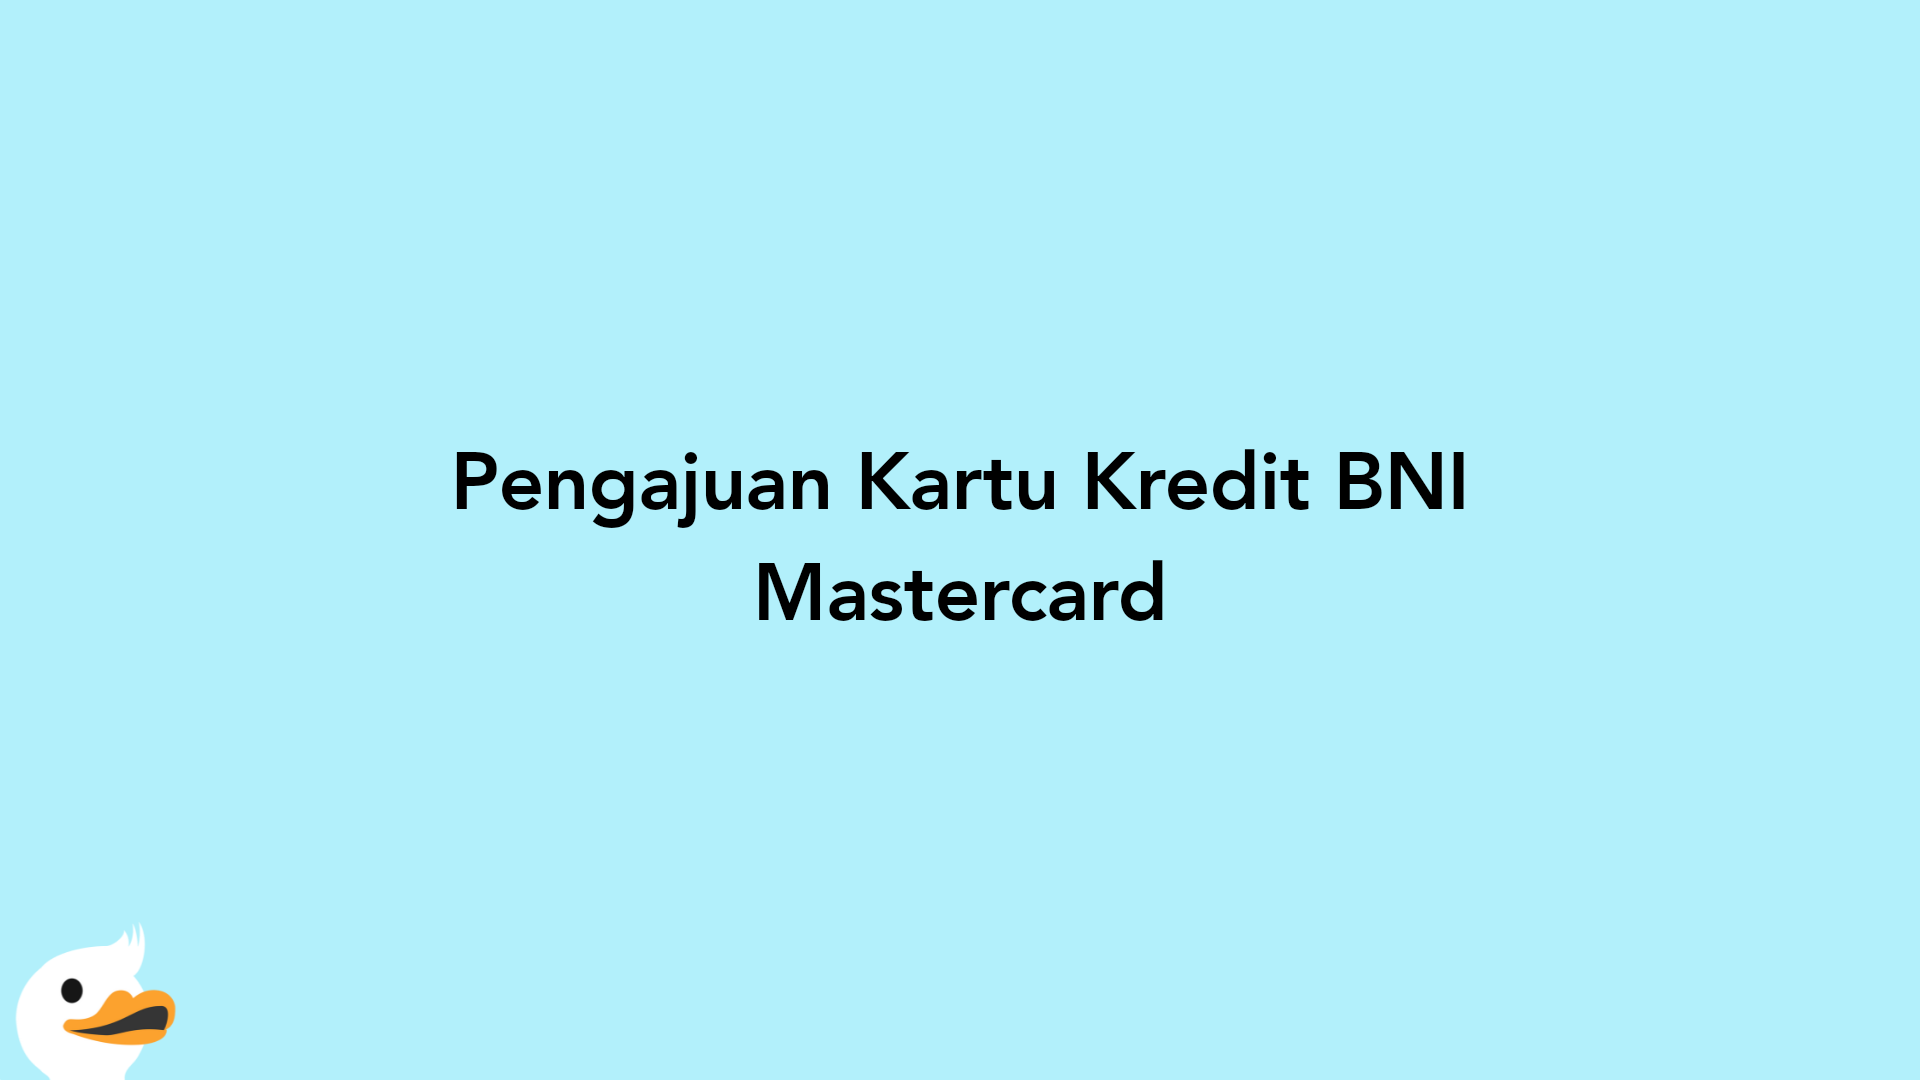 Pengajuan Kartu Kredit BNI Mastercard